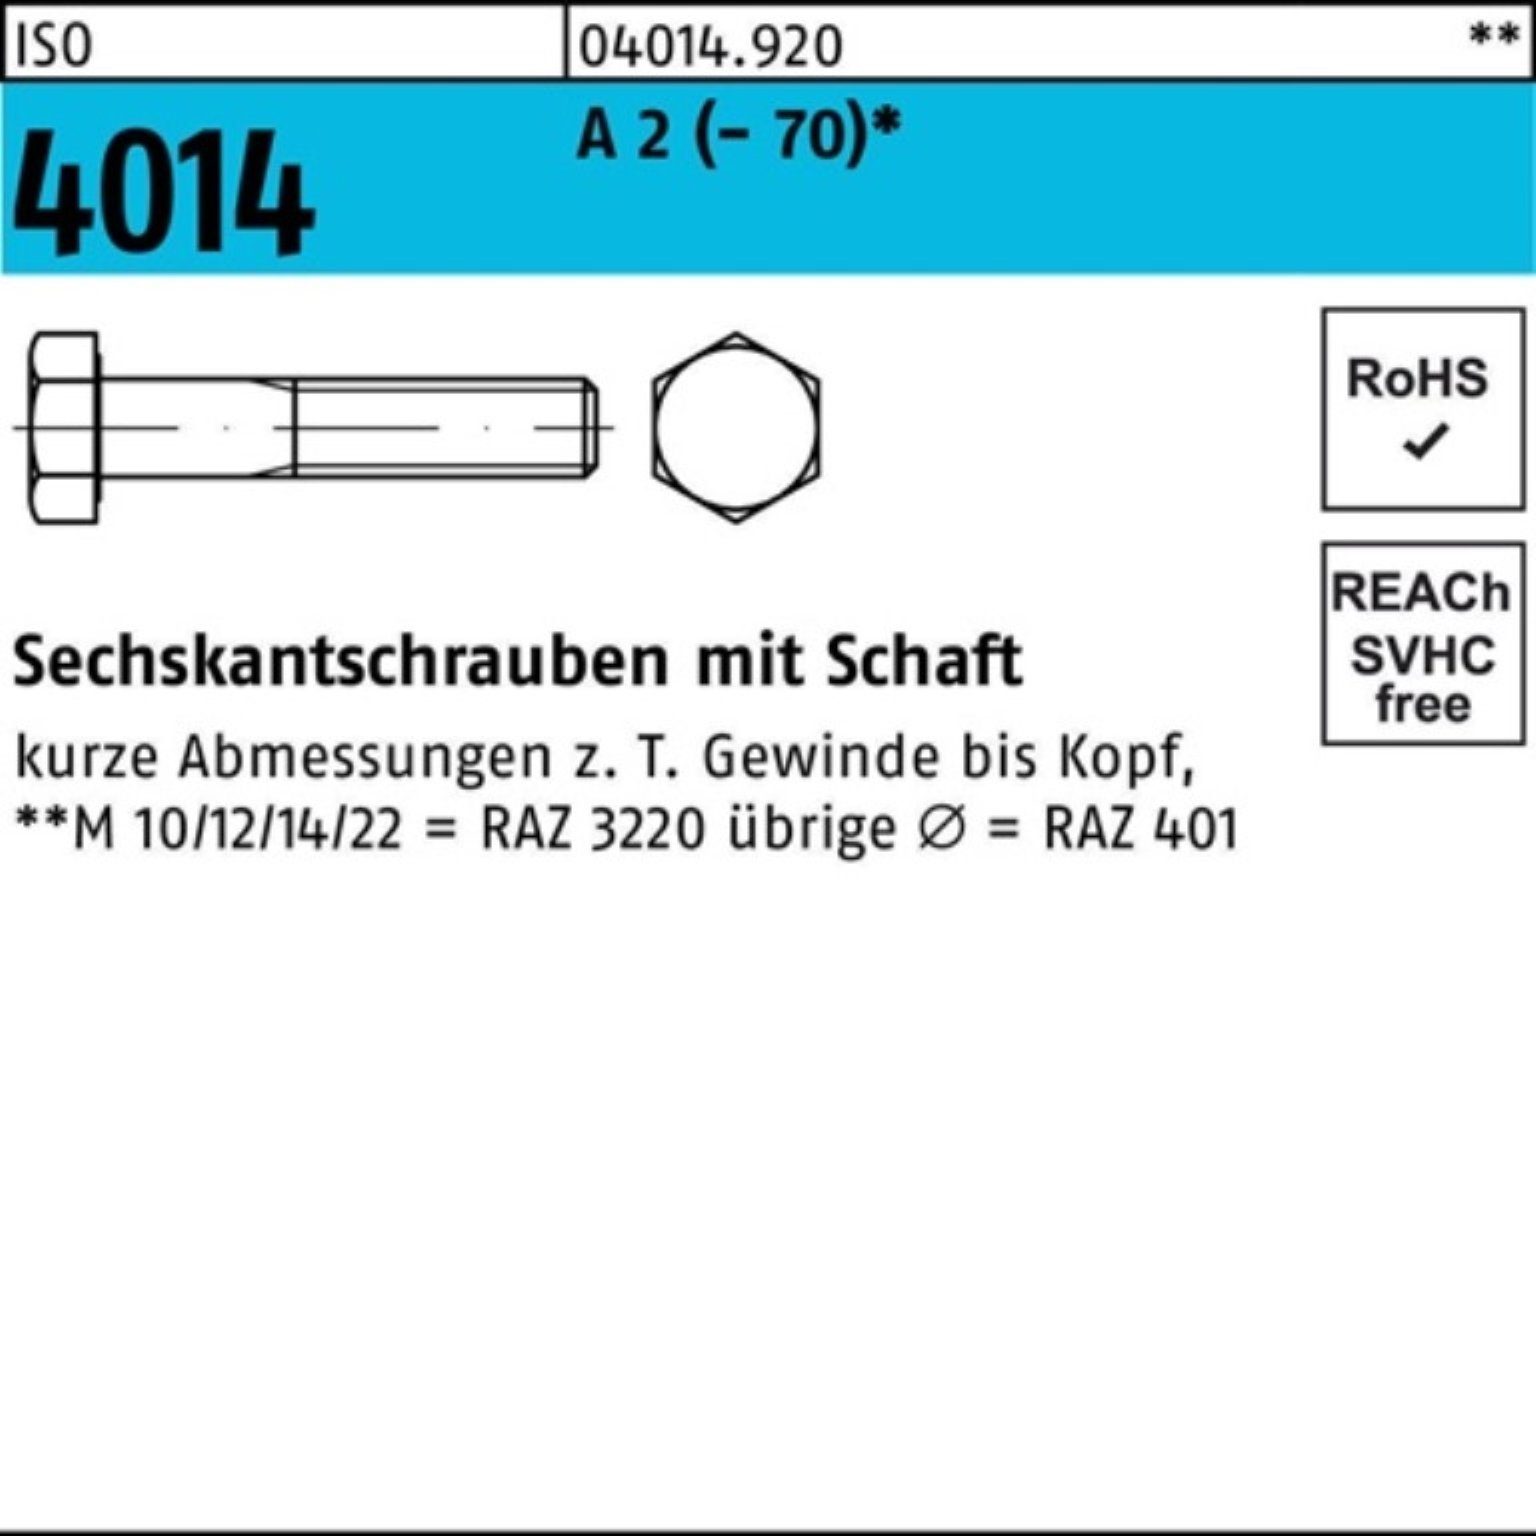 Bufab Sechskantschraube 100er Pack Sechskantschraube ISO 4014 Schaft M10x 90 A 2 (70) 50 St